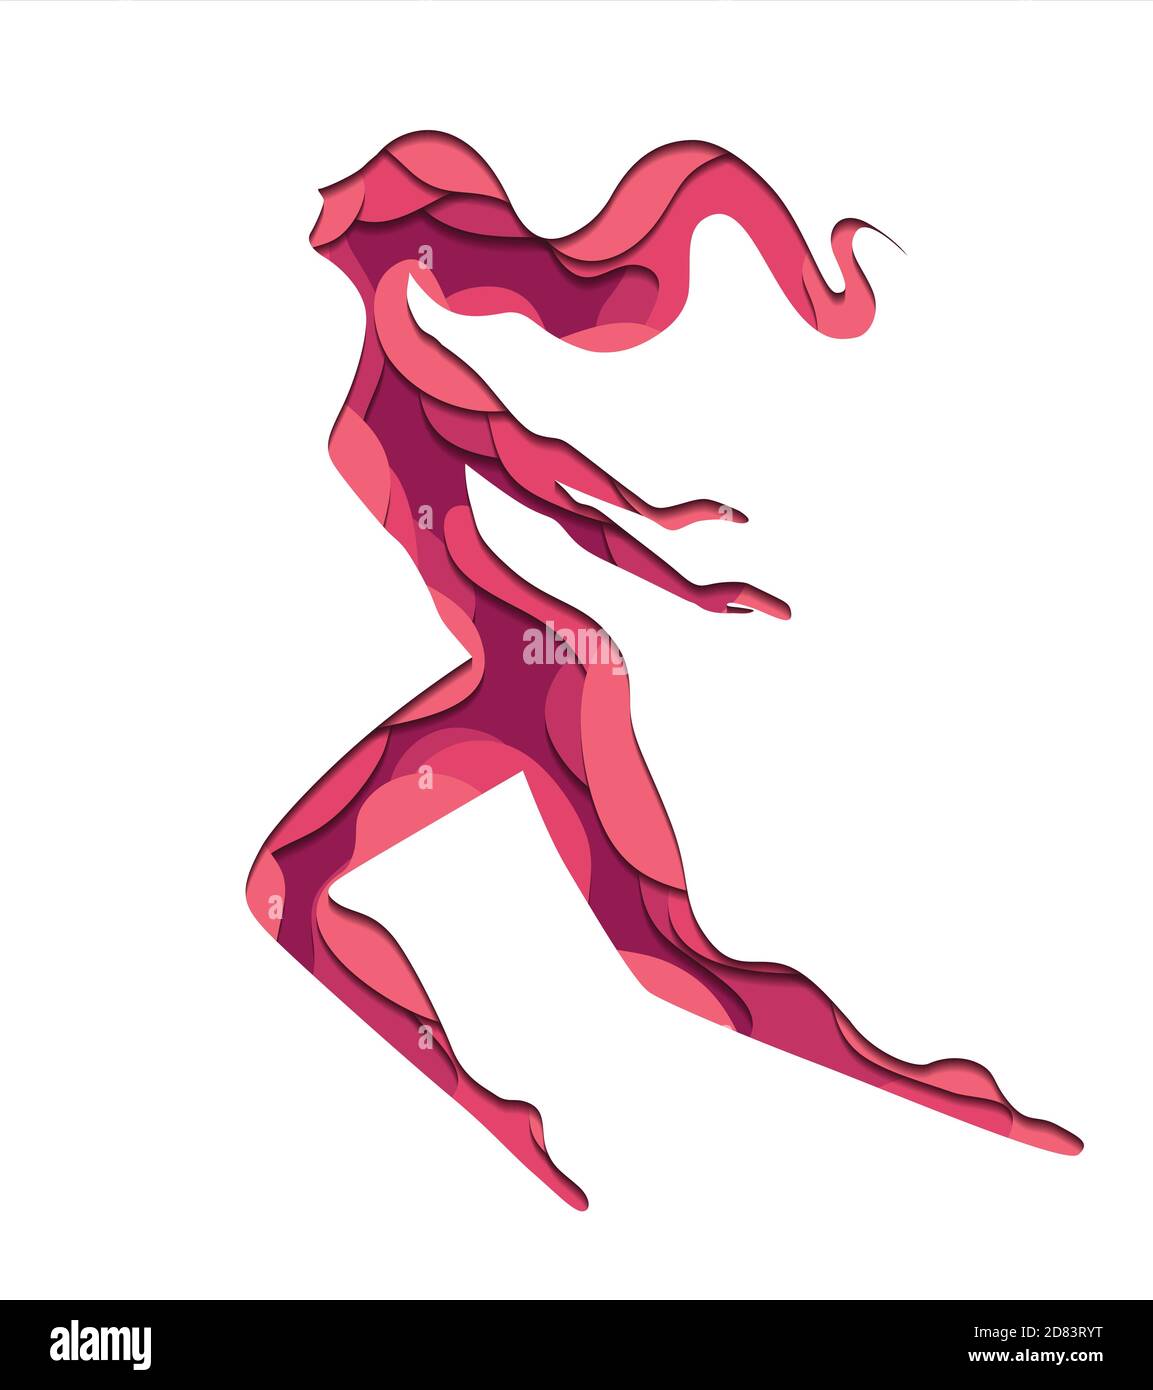 Illustration der fliegenden freien Frau mit 3d-Element aus Papier in rosa Farben geschnitten. Vektor-Element für Postkarten, Artikel und Ihr Design. Stock Vektor